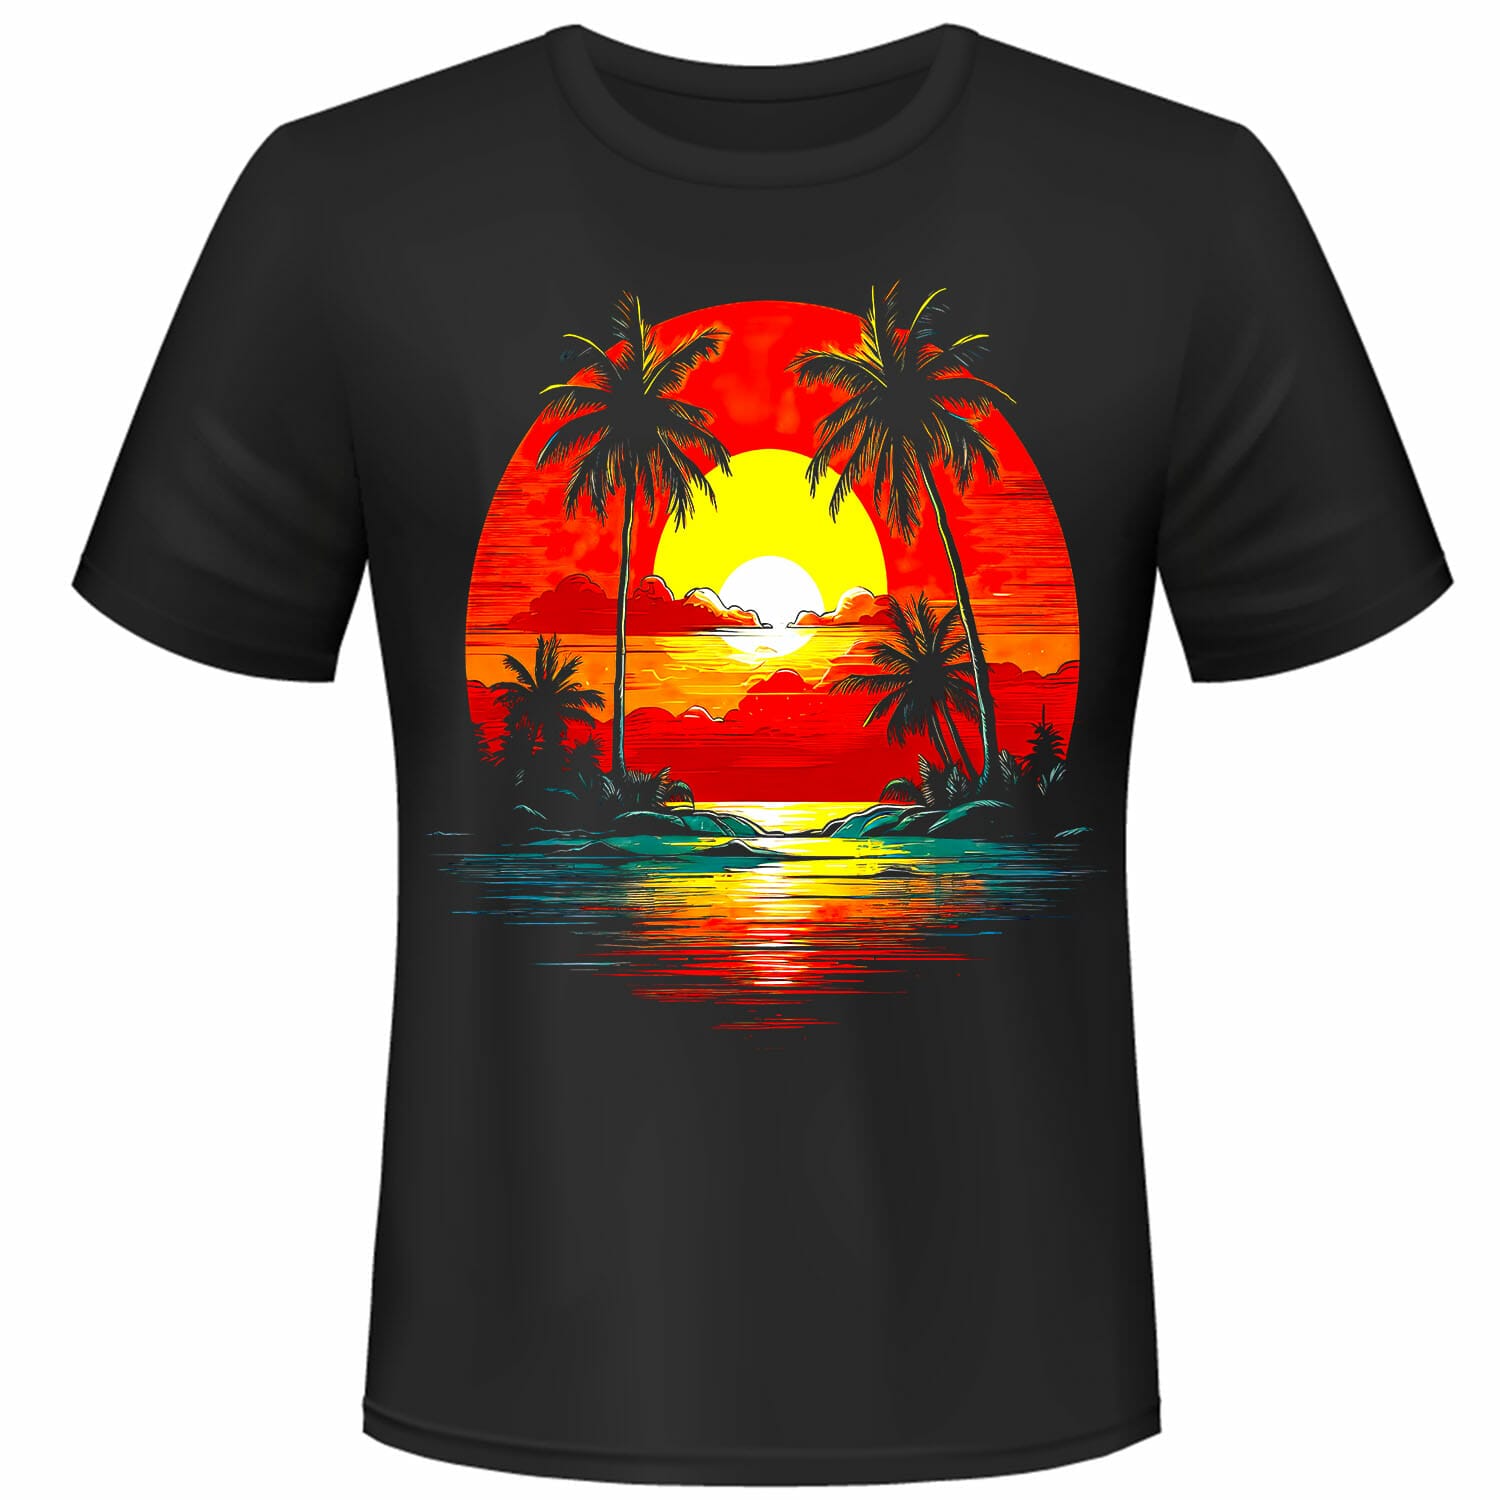 Sunset On A Beach T-Shirt Design.